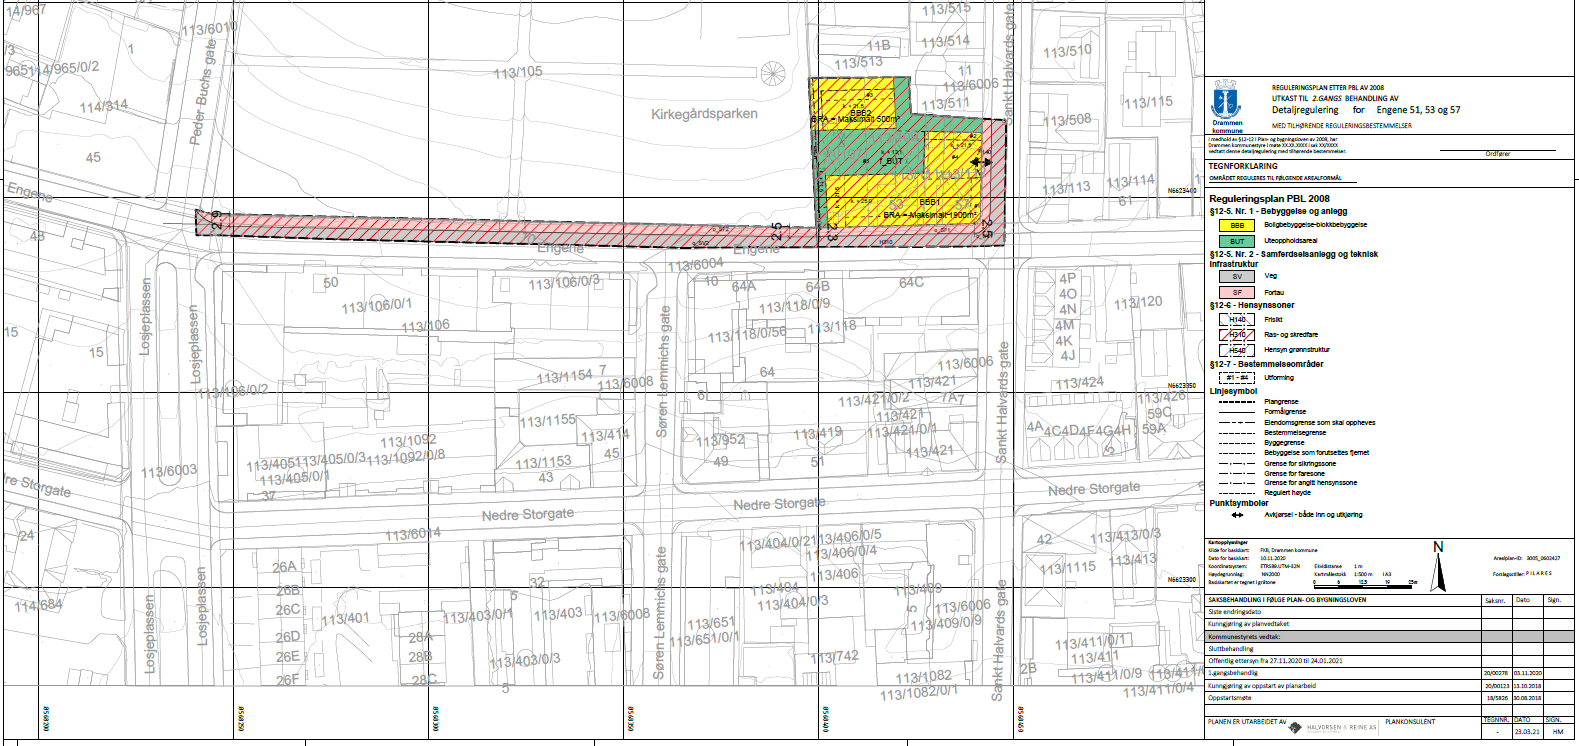 Bildet viser plankartet, der området hovedsakelig er regulert til boligbebyggelse, blokkbebyggelse, oppdelt av et felles uteoppholdsareal.